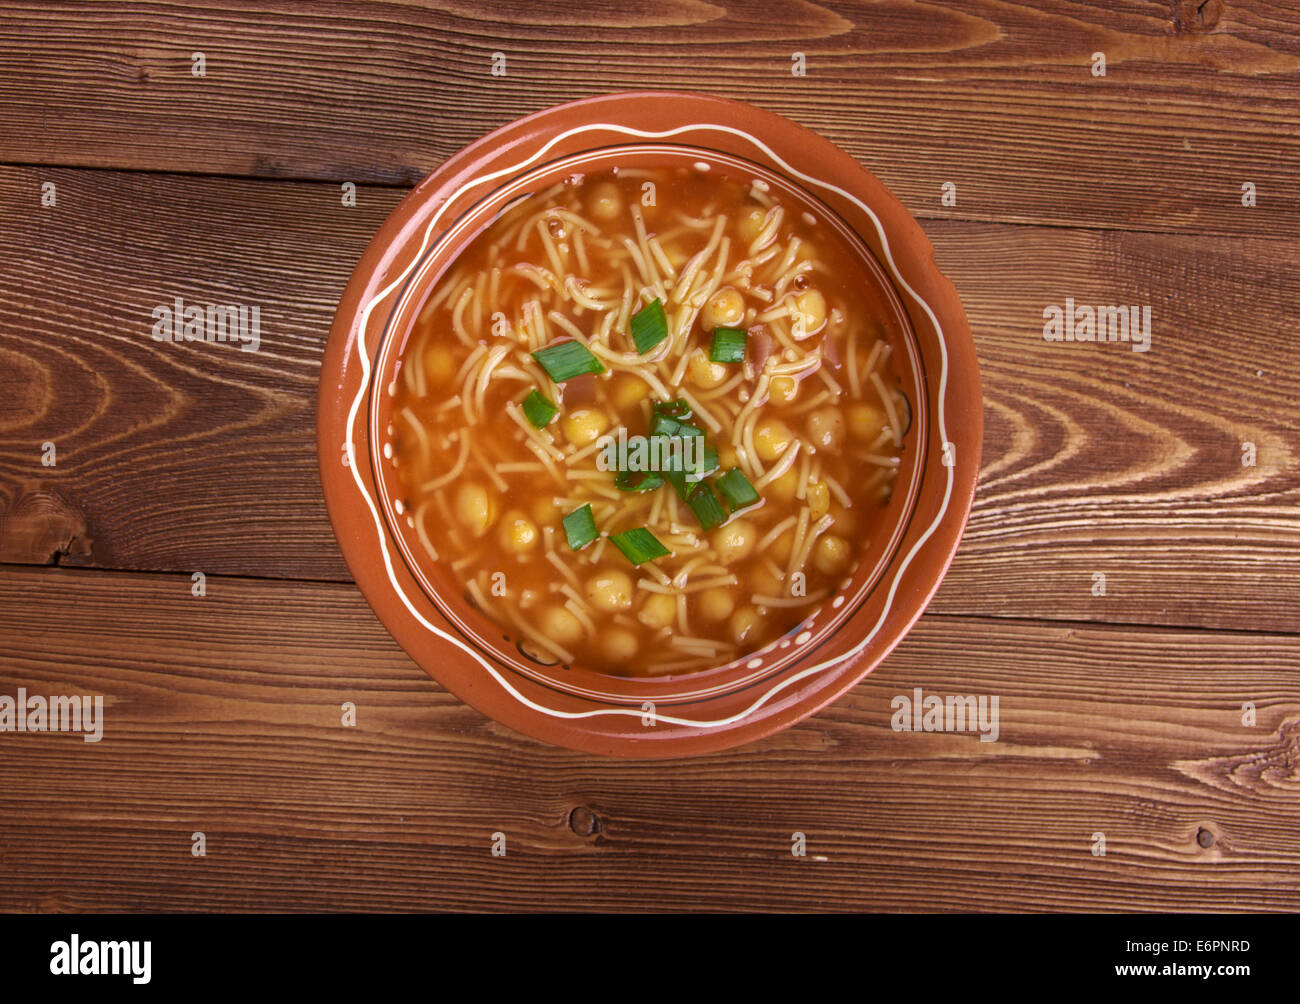 Minestra di Ceci - Italian chickpea  soup Stock Photo